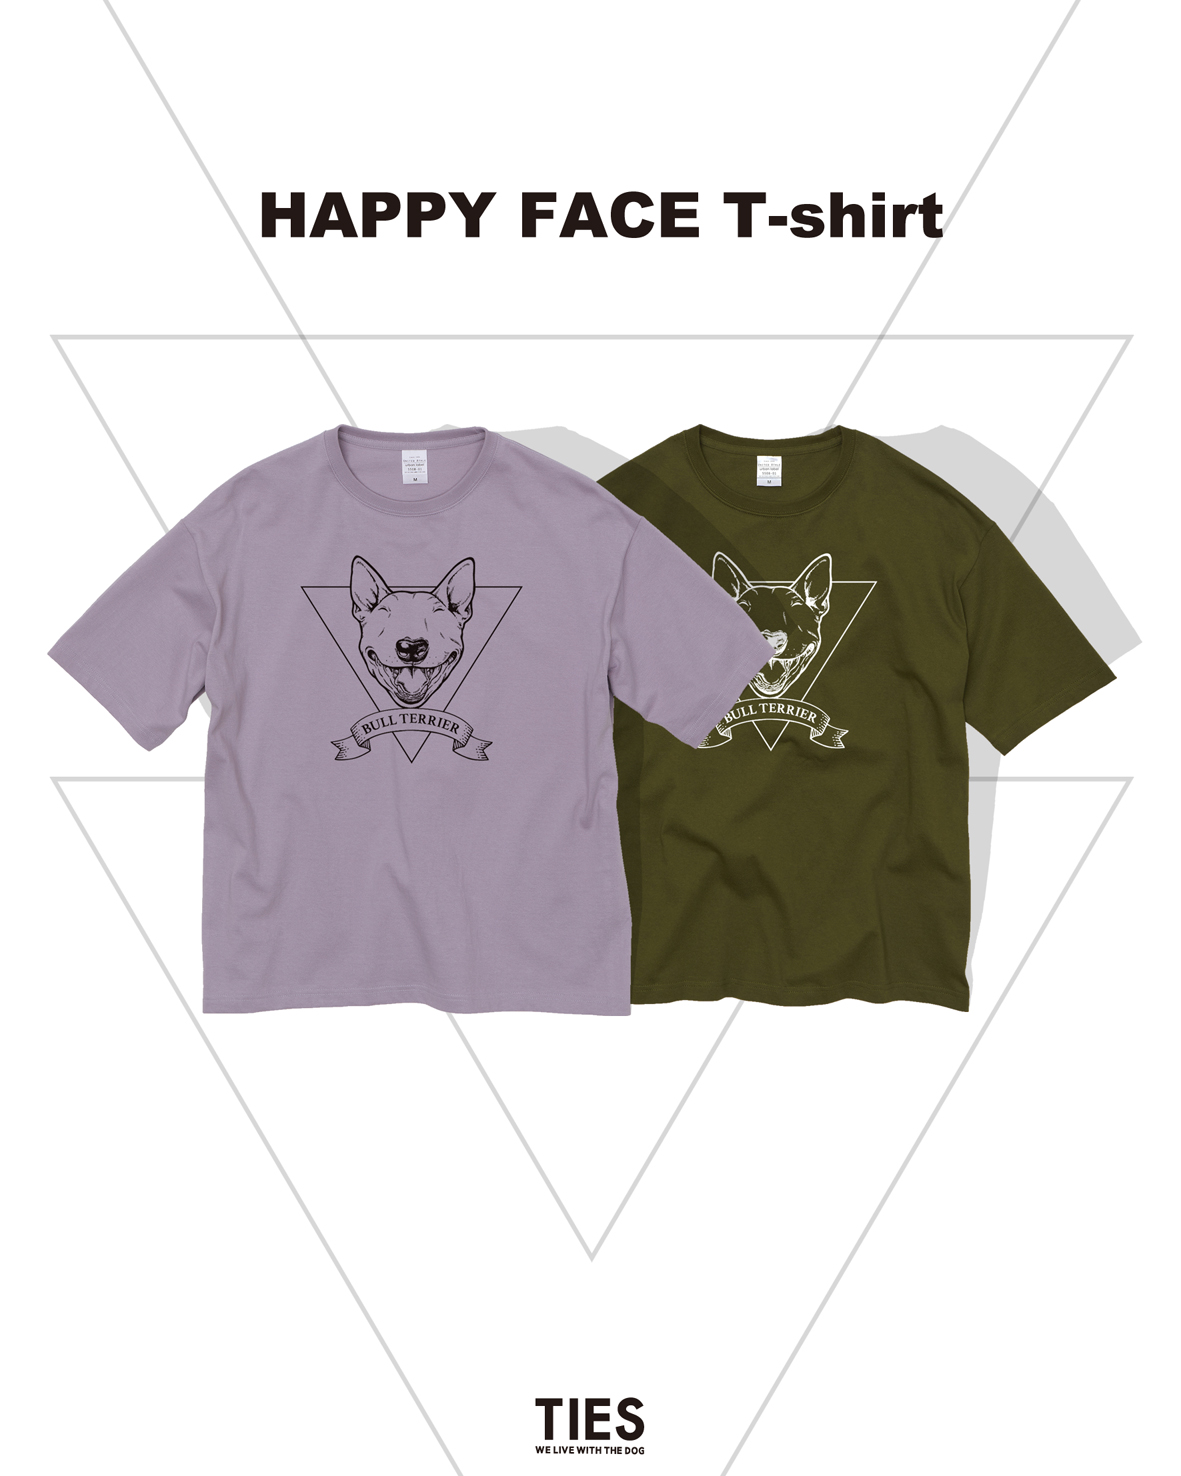 お待たせしている、HAPPY FACE T-shirtは6月9日以降に発送予定しいます。